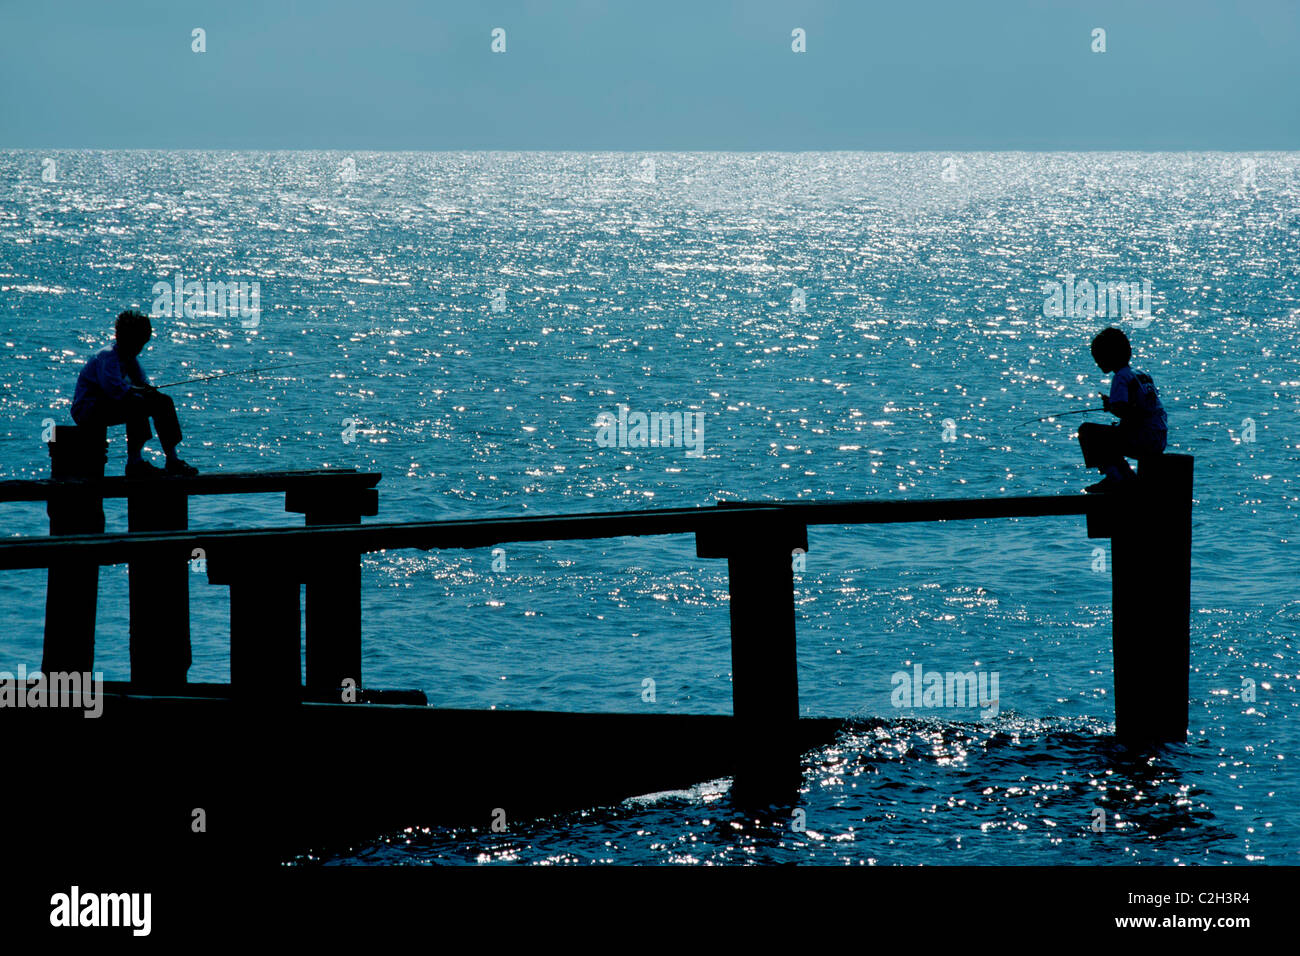 Dos chicos están recortadas por las brillantes aguas del Golfo de México, ya que el pescado de pilotes en Cedar Key en la costa oeste de Florida, Estados Unidos. Foto de stock